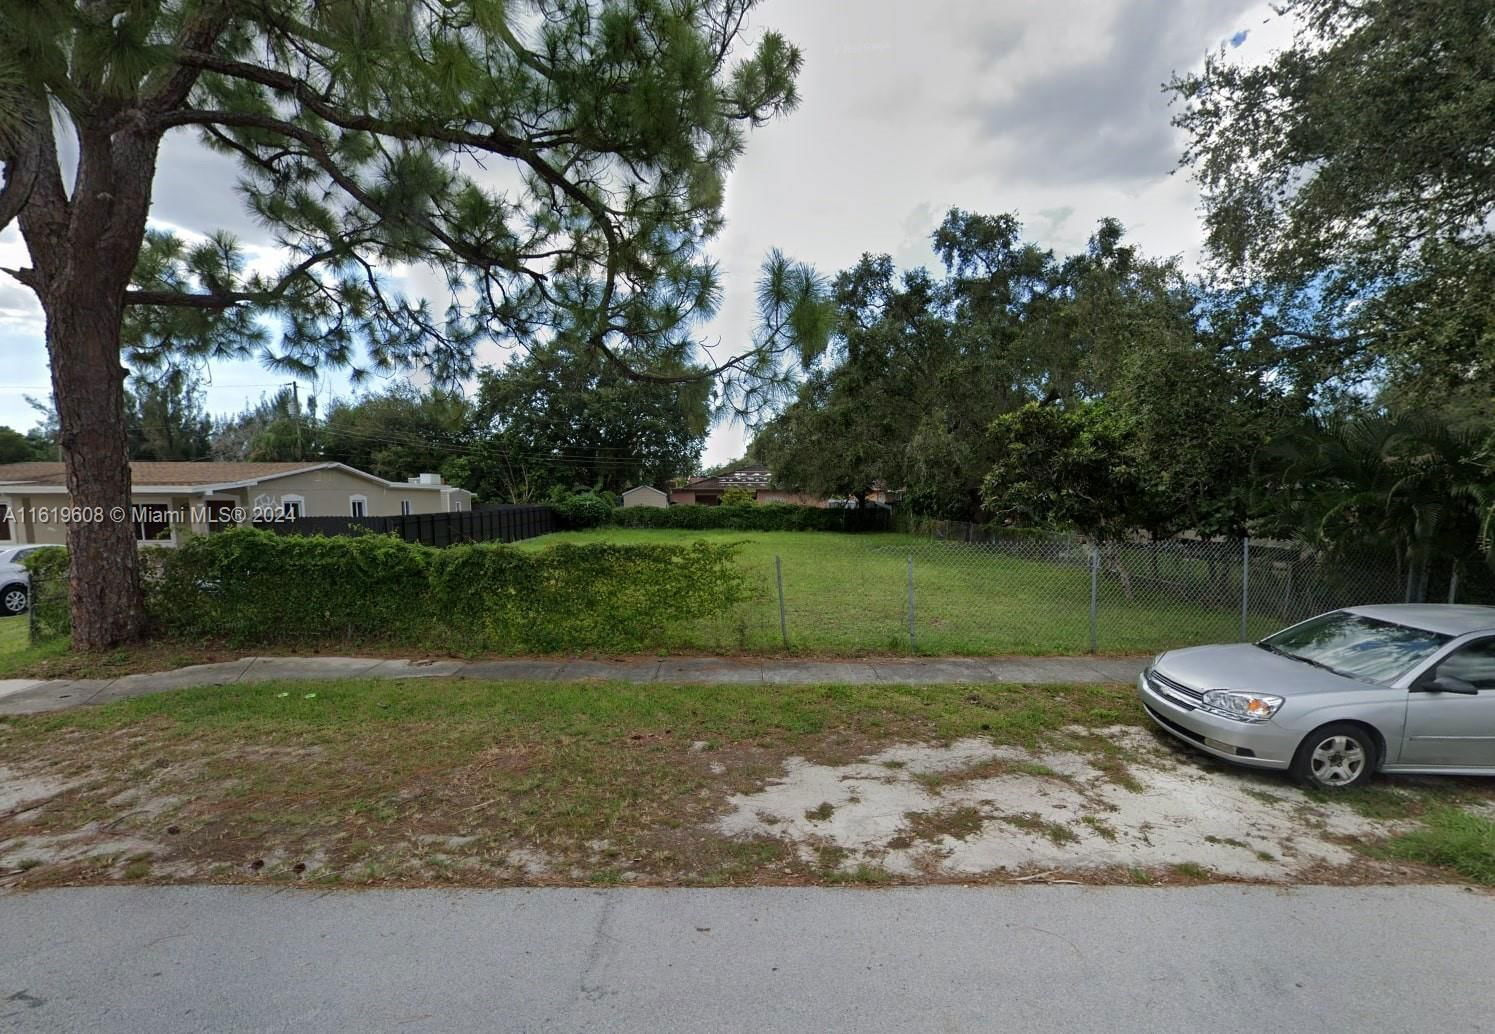 Real estate property located at XXXX XXX ST, Miami-Dade County, VENETIAN GARDEN REV, Miami Gardens, FL